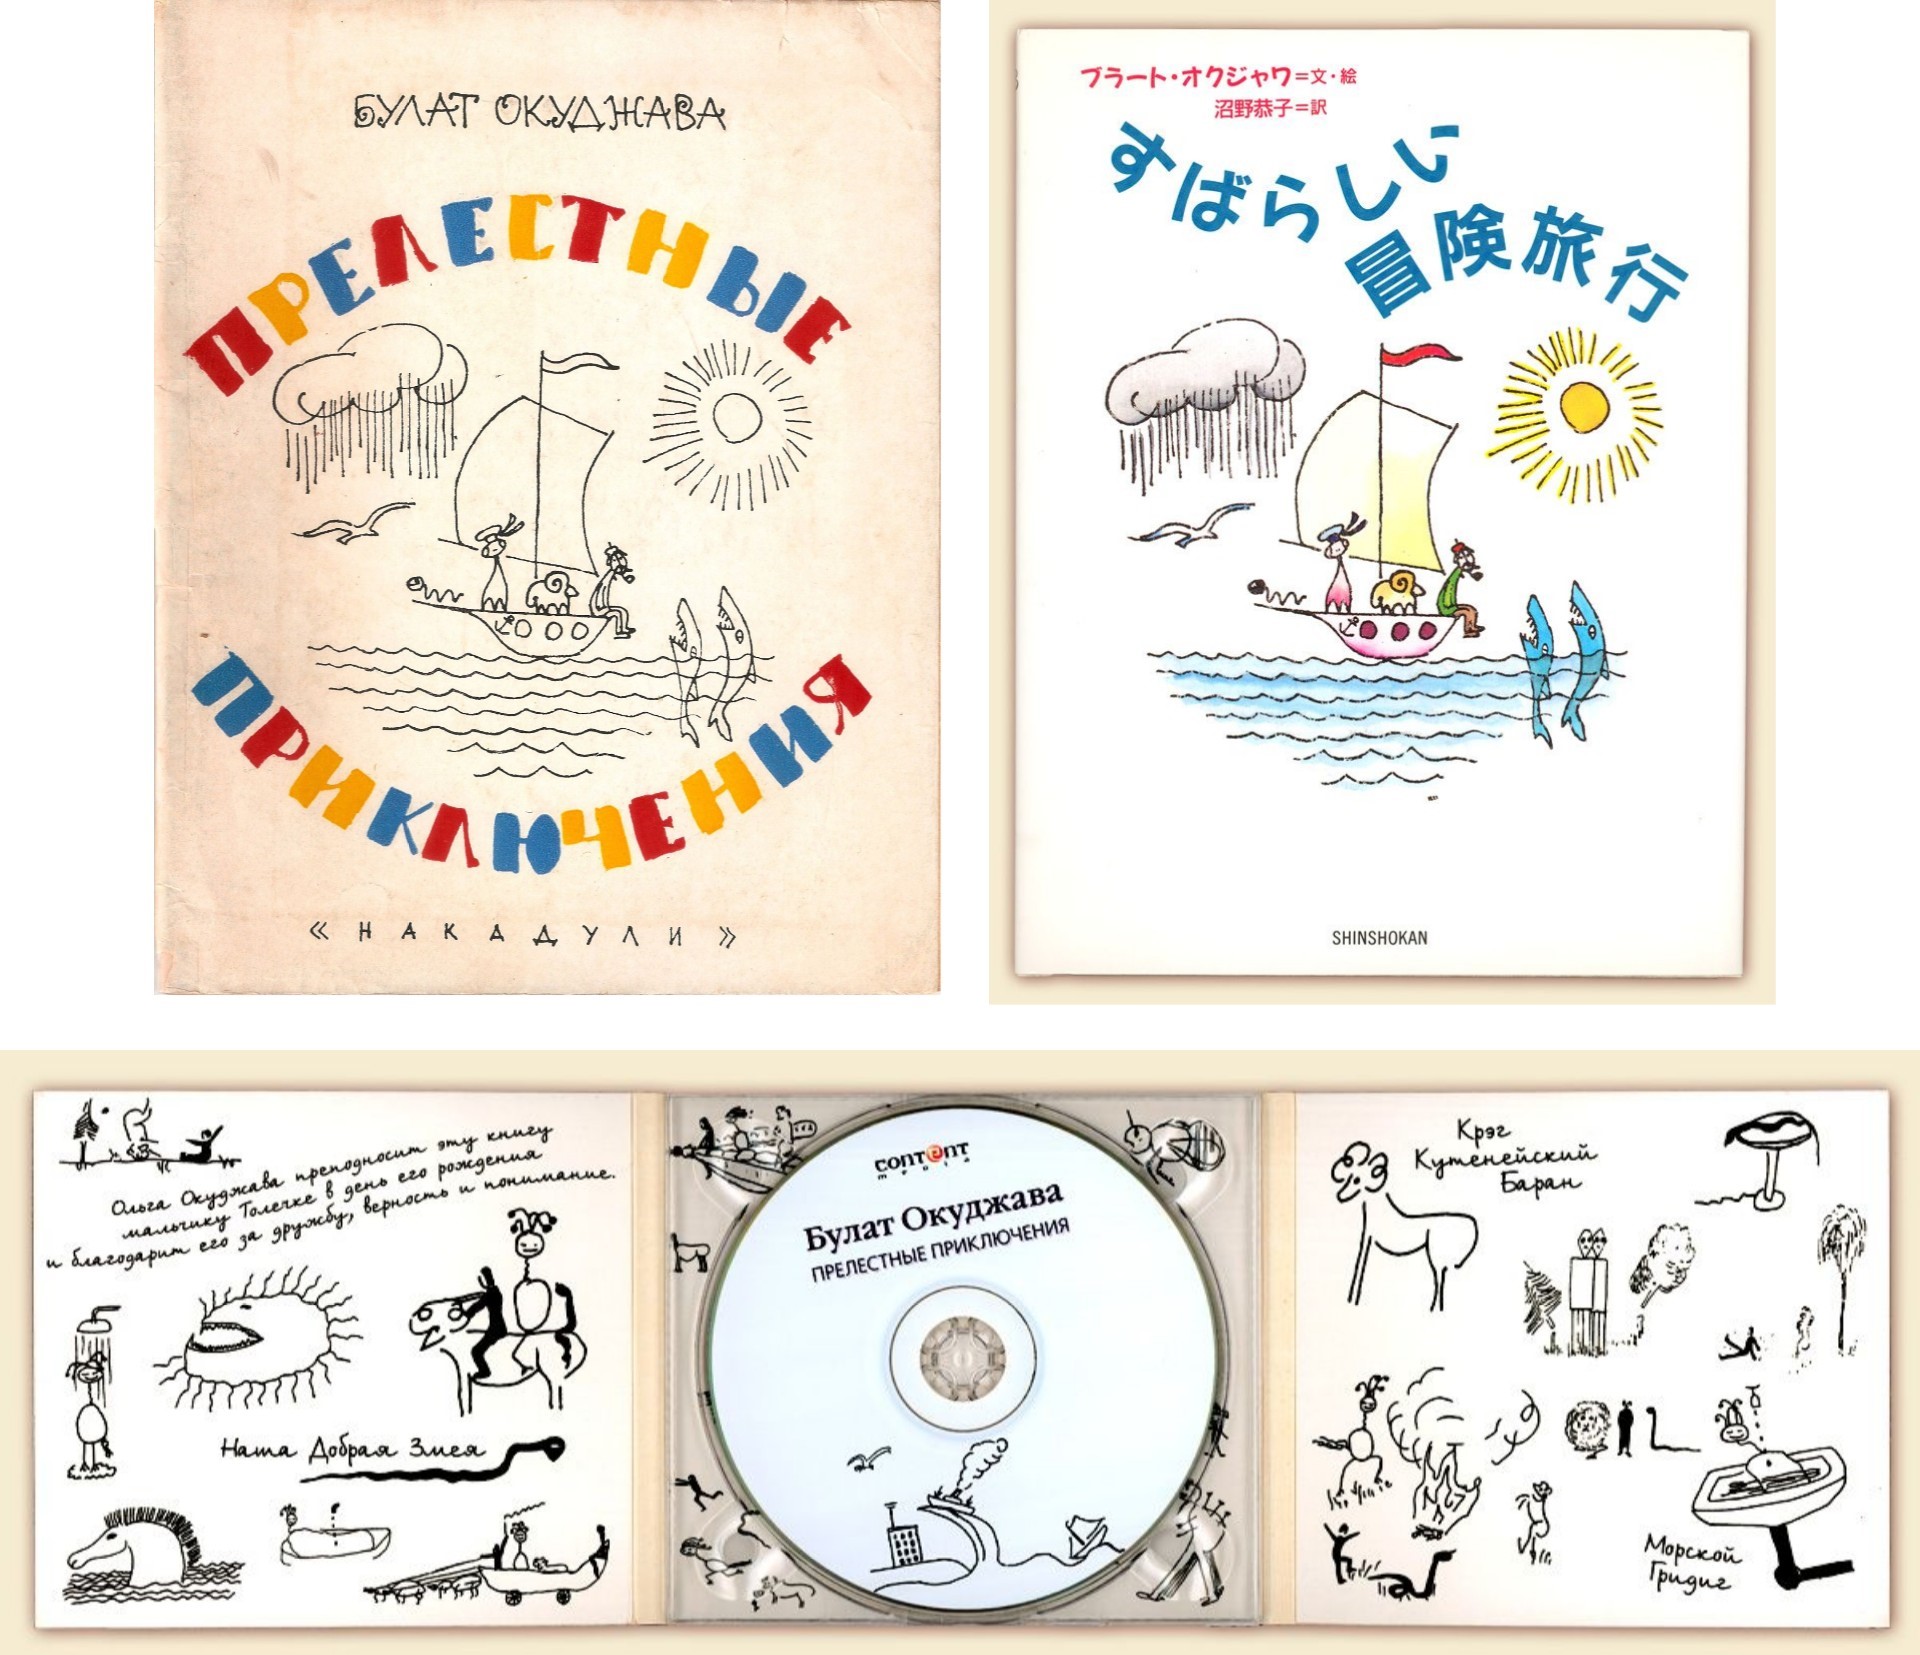 Обложки книг, выпущенных в Грузии и в Японии и аудиоверсия сказки «Прелестные приключения»